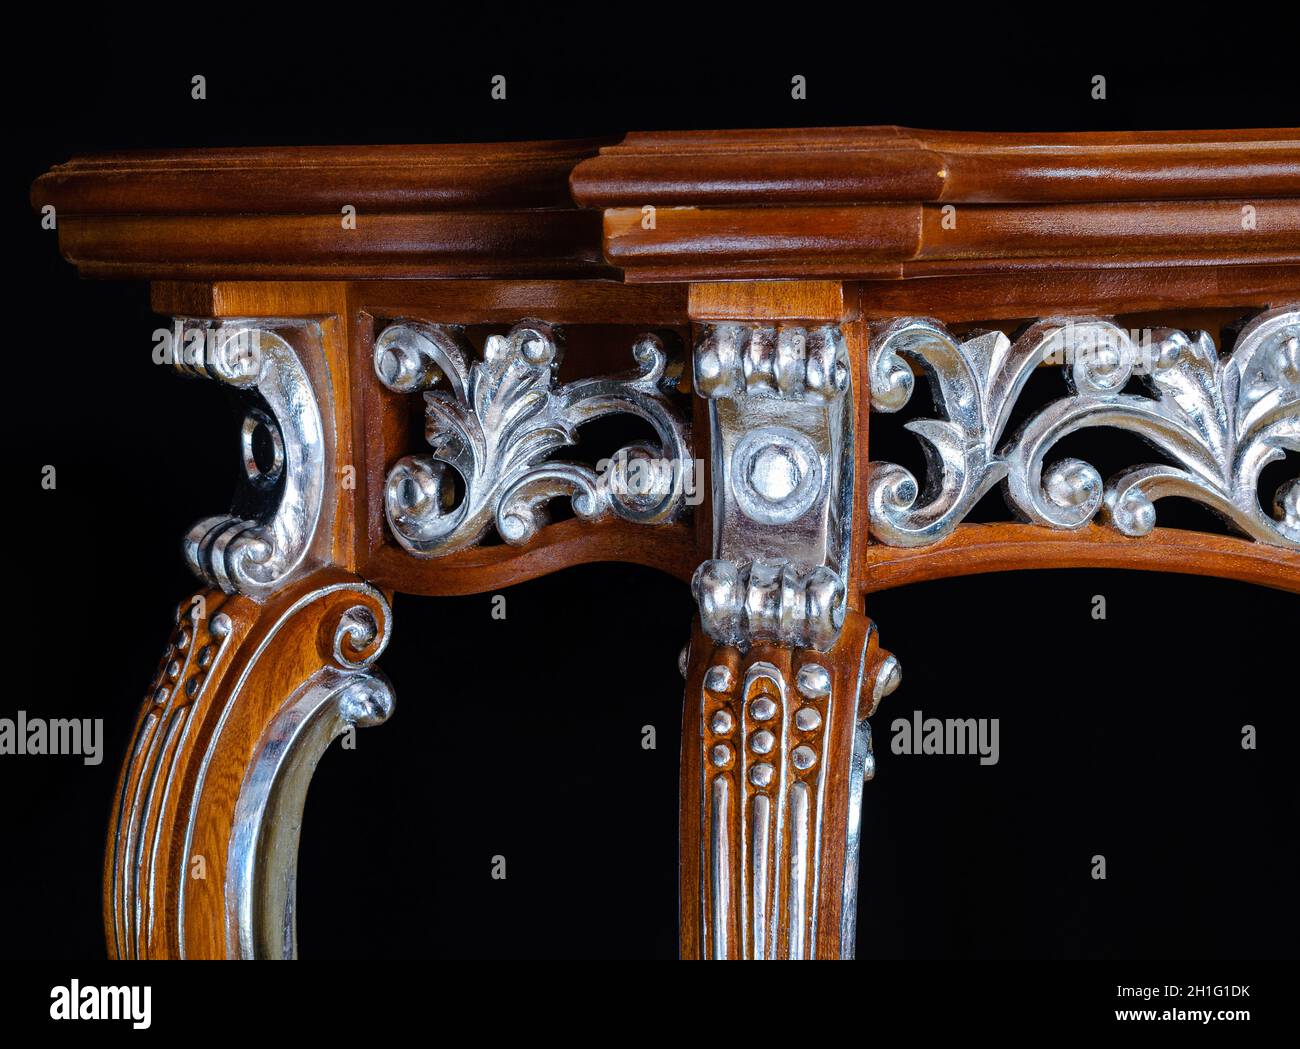 Holz geschnitzt Element der Luxus-Möbel in einem klassischen Stil. Lackiertes Holz mit silberner Lackverkleidung. Schöne Kunst der Holzschnitzerei Stockfoto